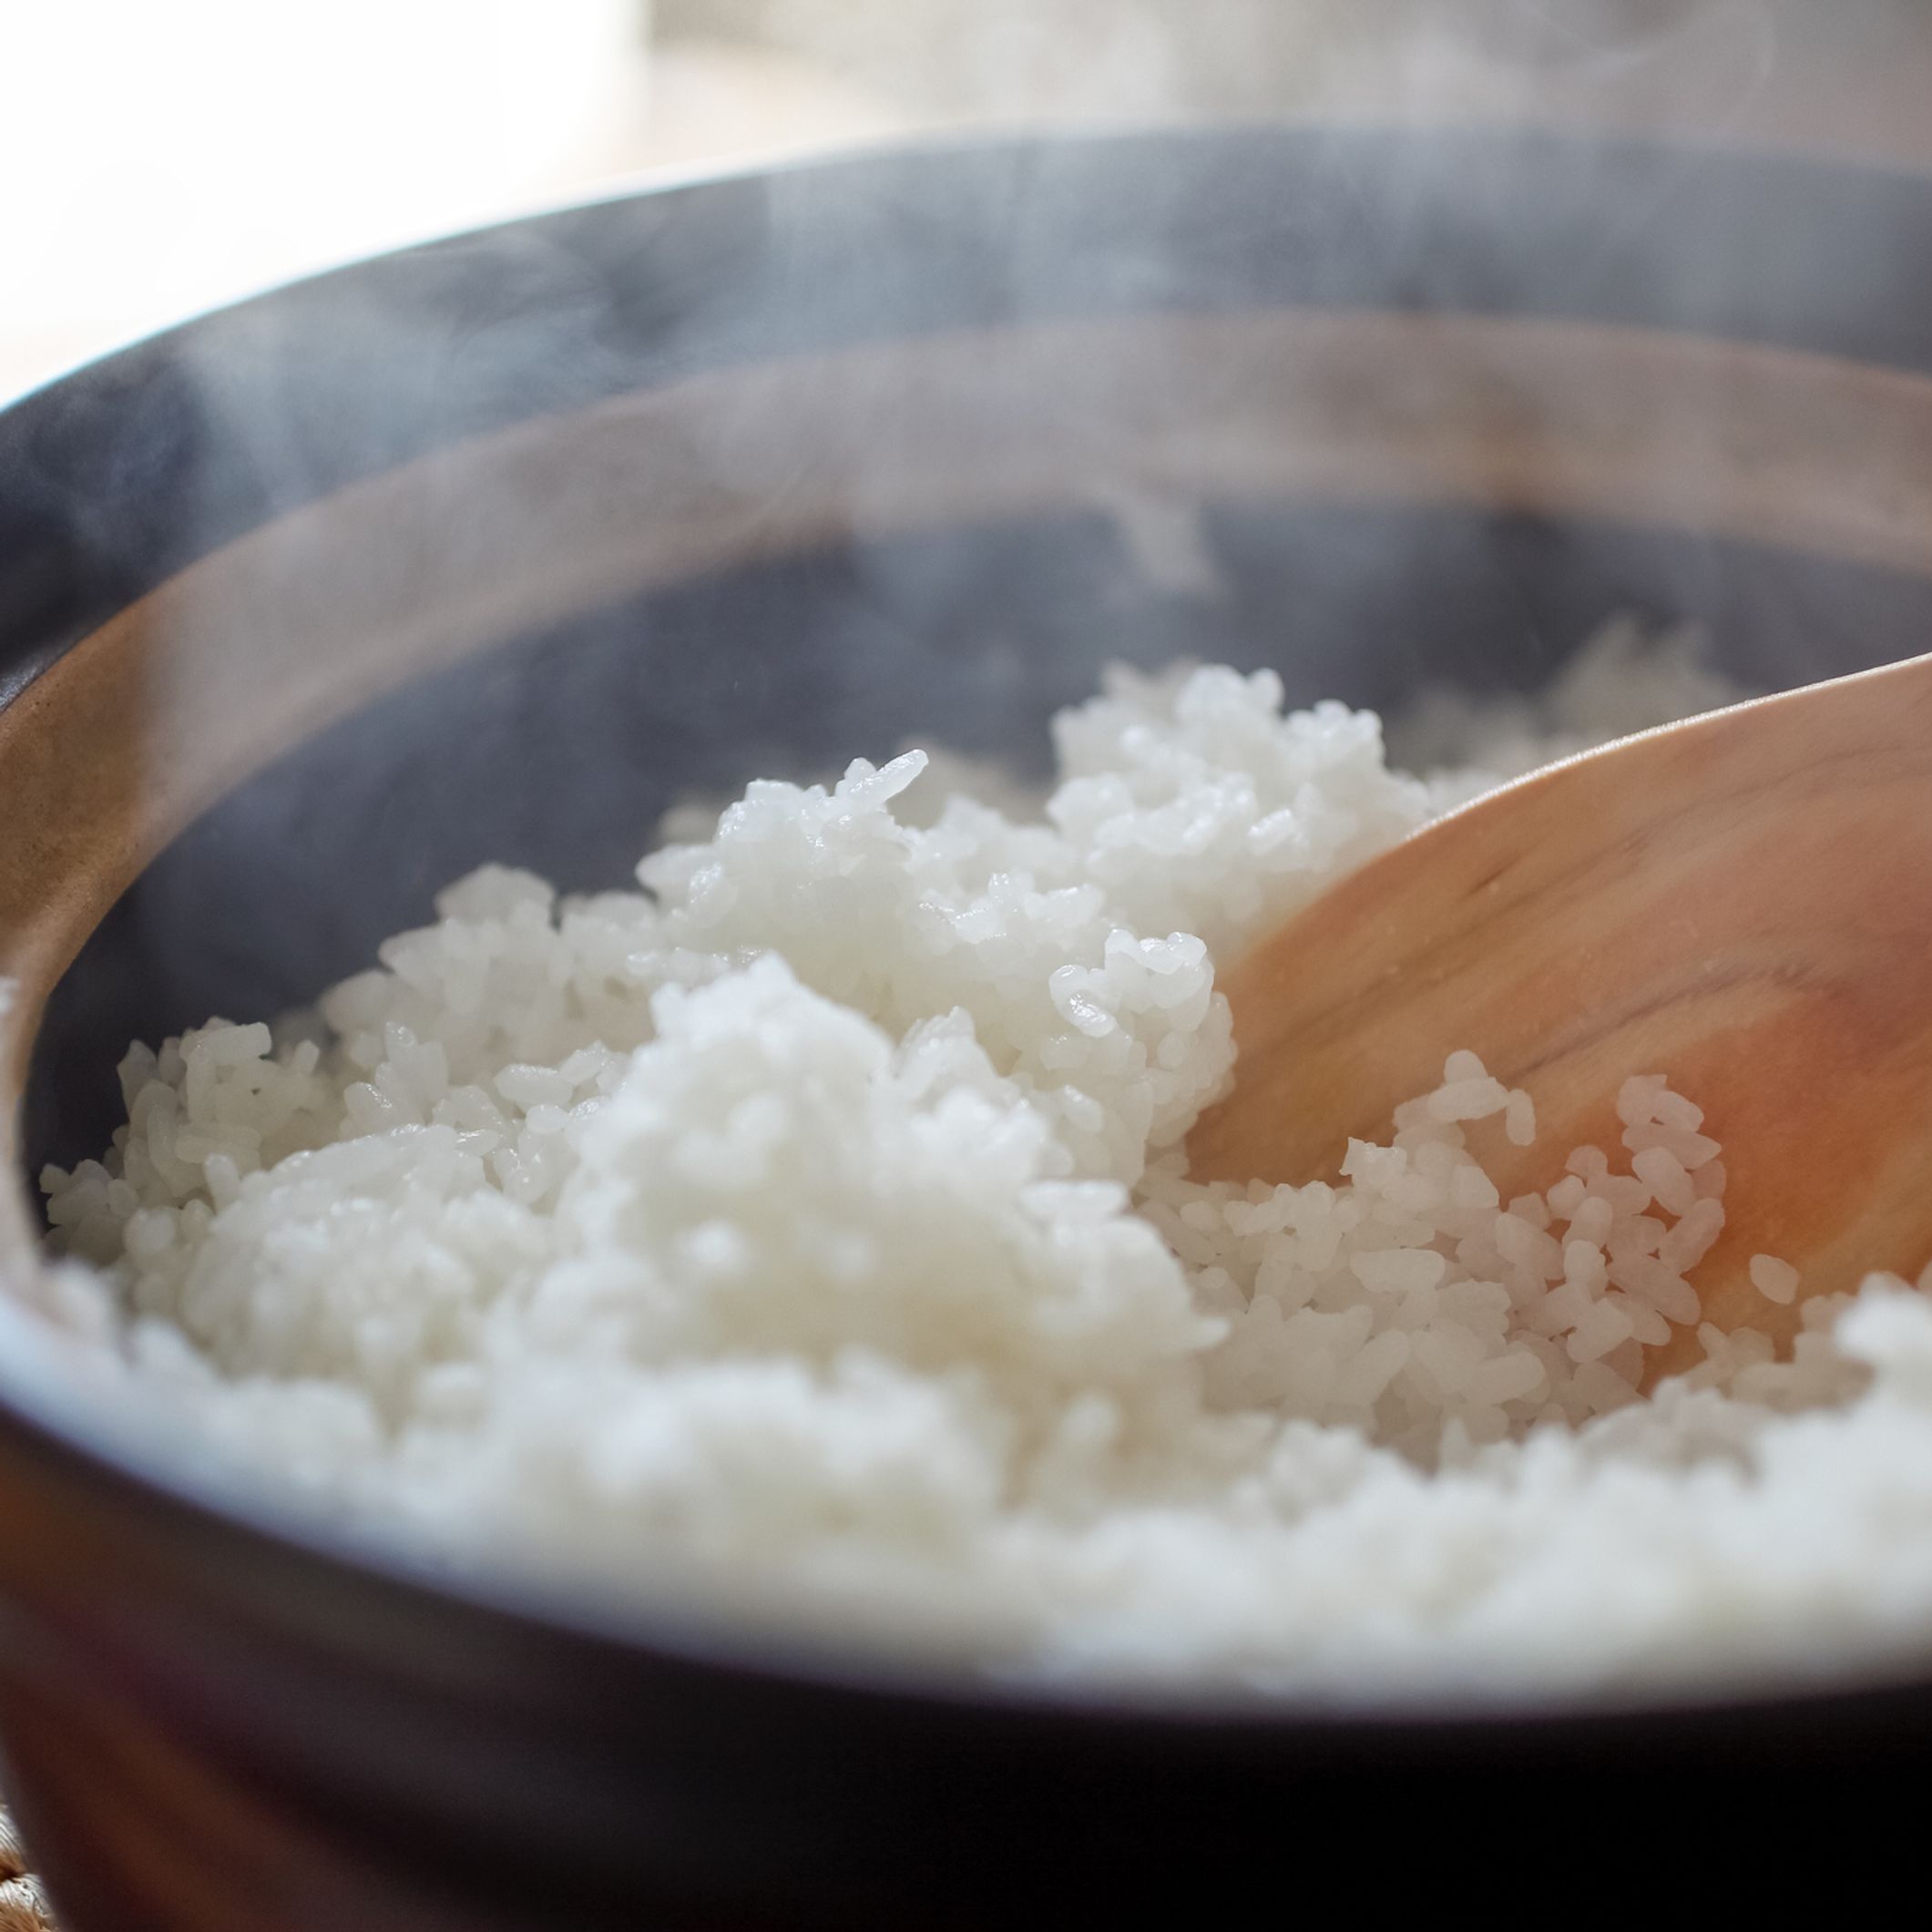 Pour un riz sauté à la thai réussi, suivez nos conseils !